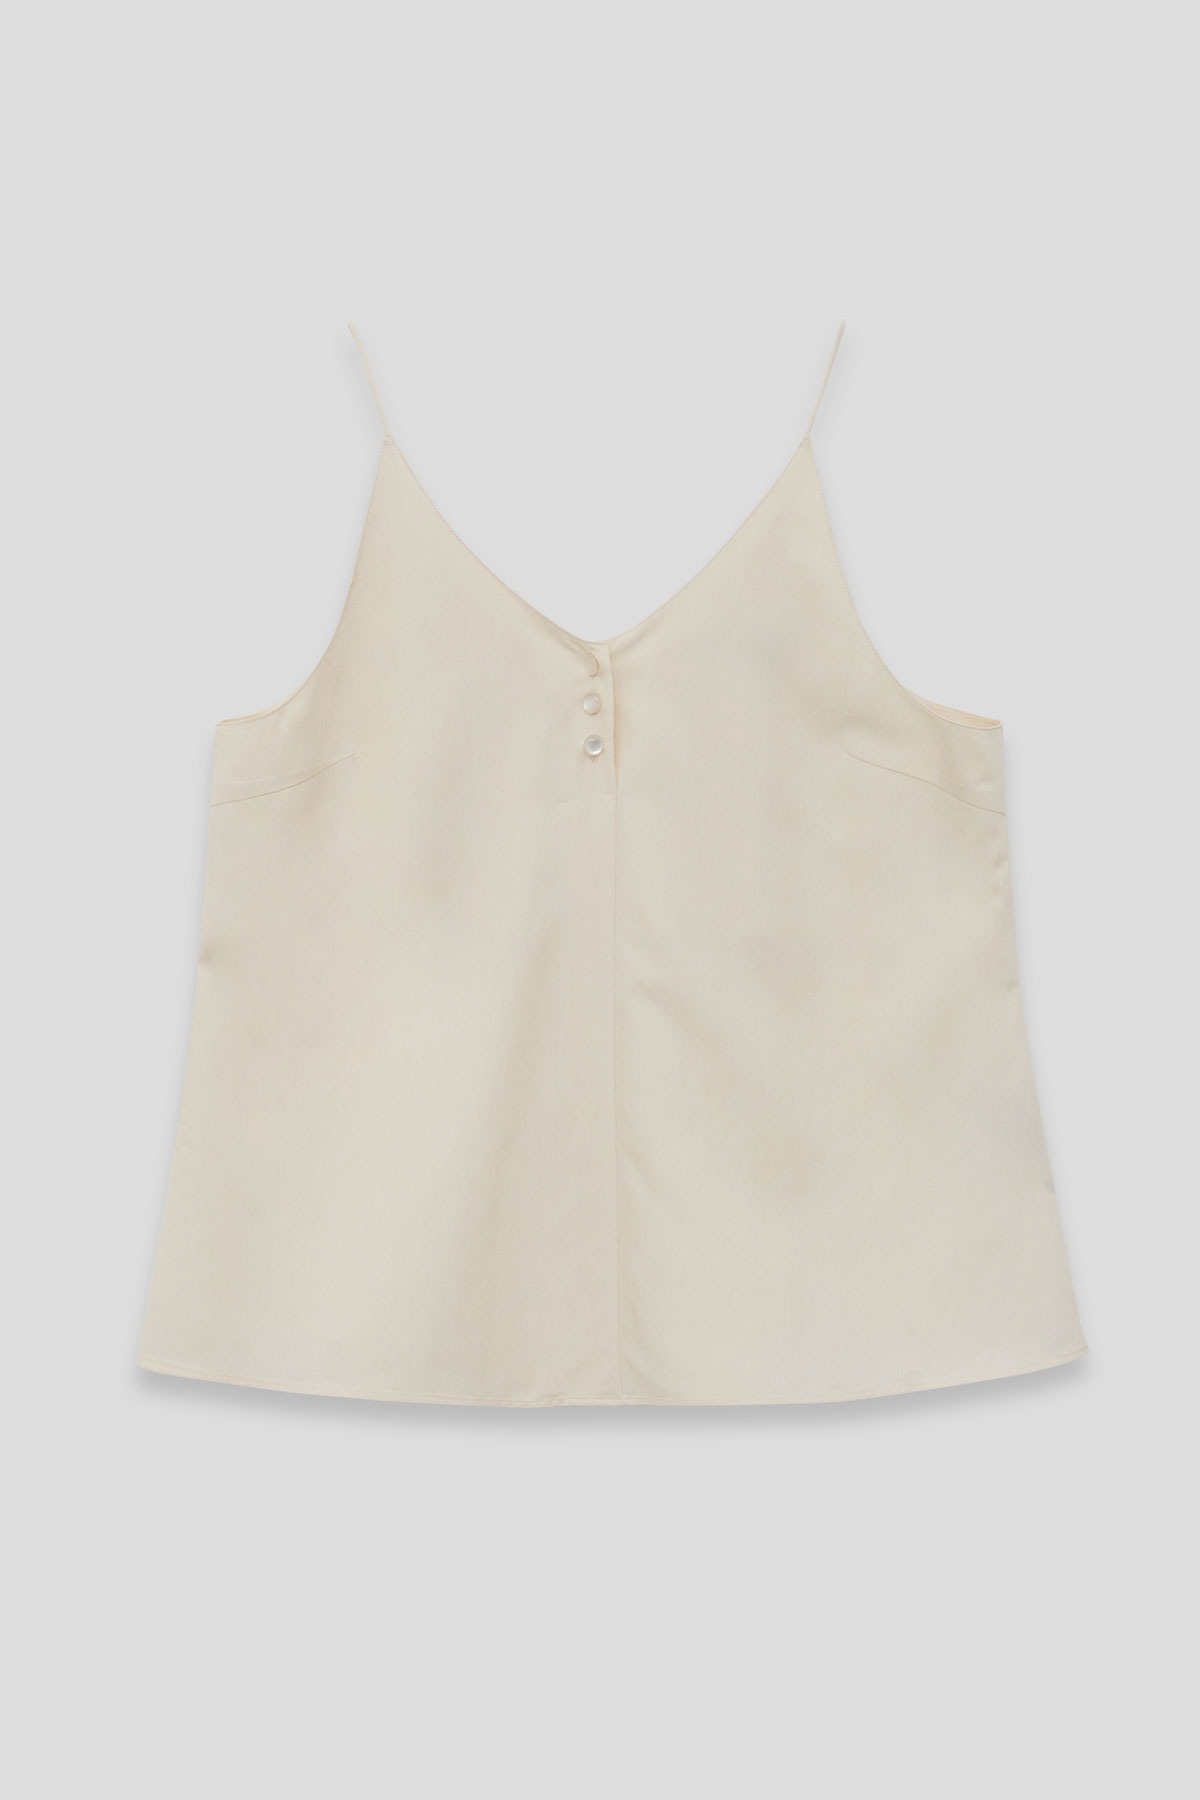 Button sleeveless top(cream)